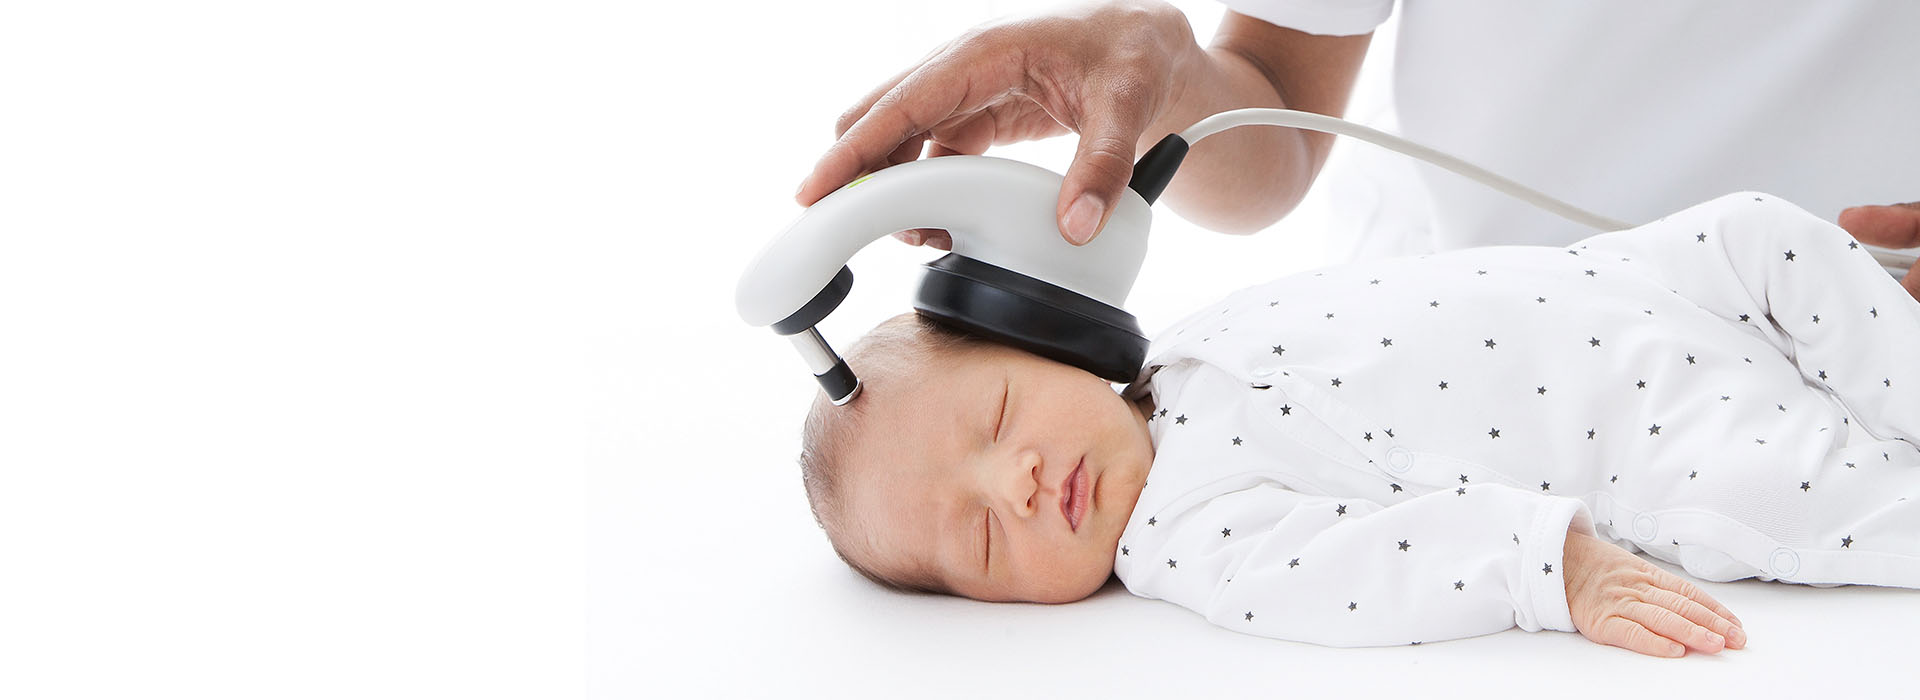 Регистрация отоакустической эмиссии. Отоакустическая эмиссия аппарат. Аудиоскрининг новорожденных прибор. Аудиологический скрининг новорожденного. Аппарат для проверки слуха у новорожденных.